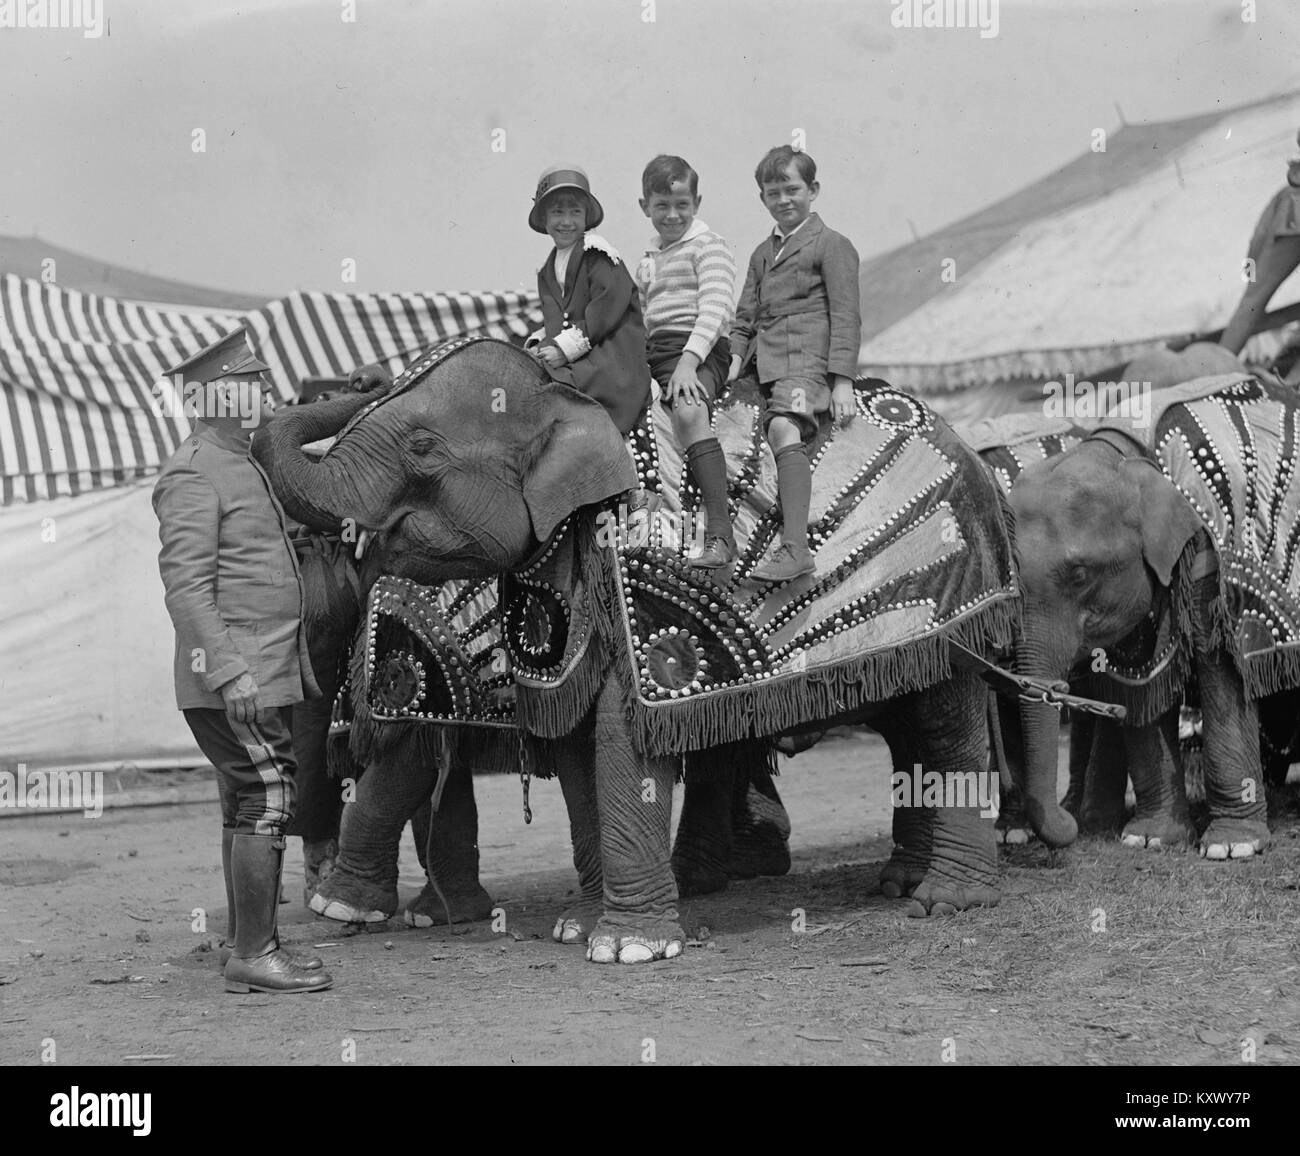 Trois enfants monter un éléphant de cirque Banque D'Images